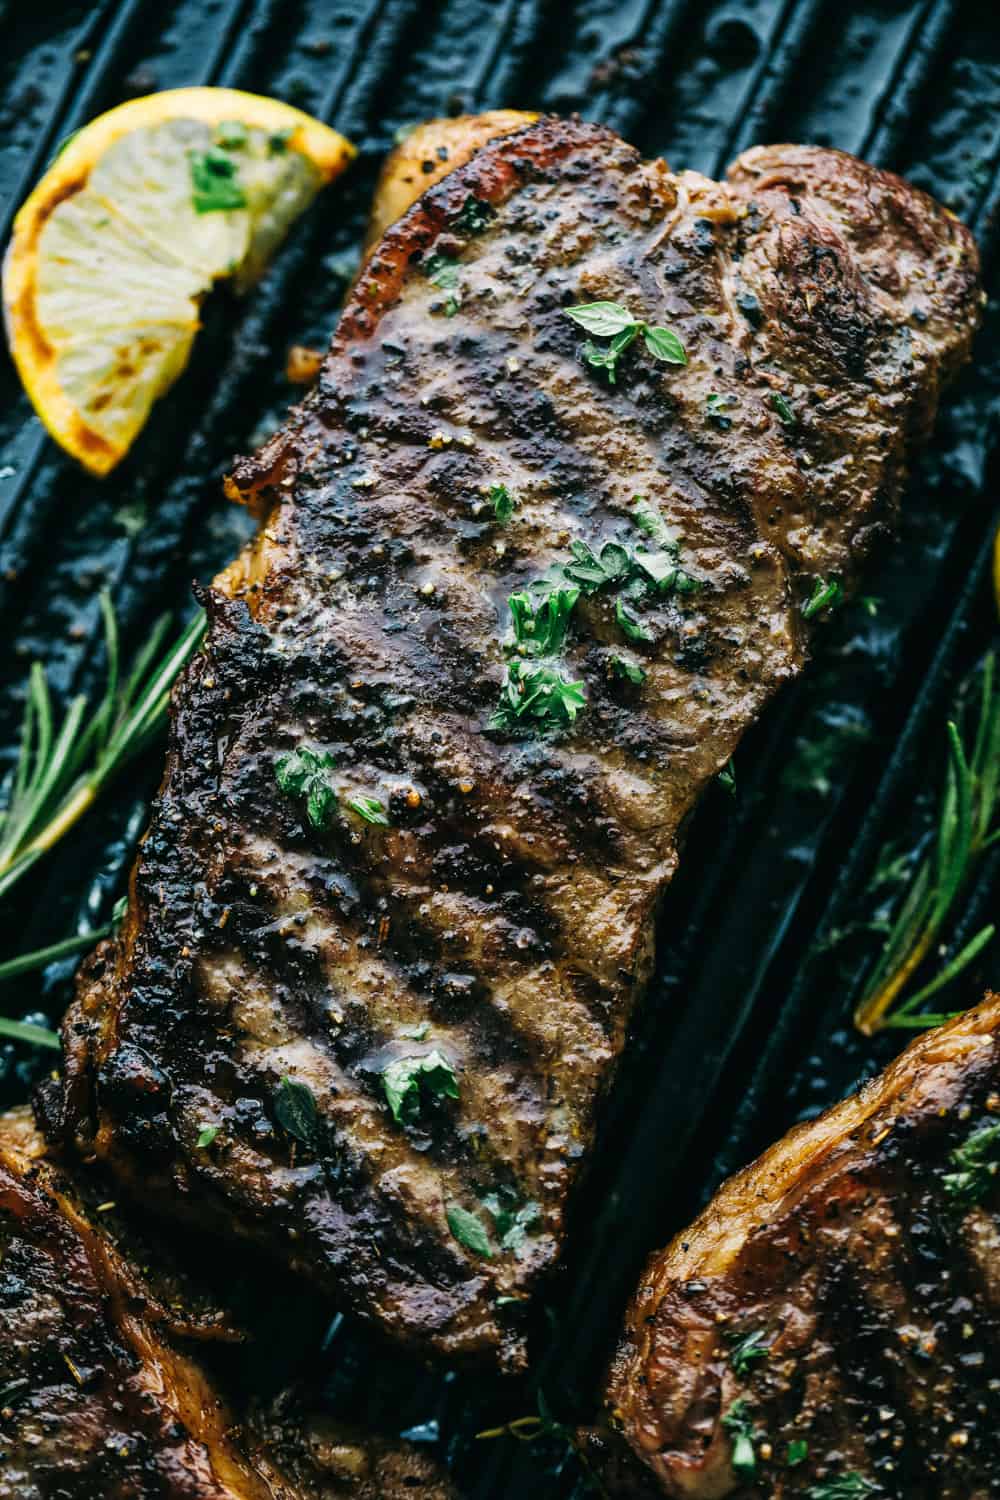 Fertiges Steak auf einer Grillpfanne.